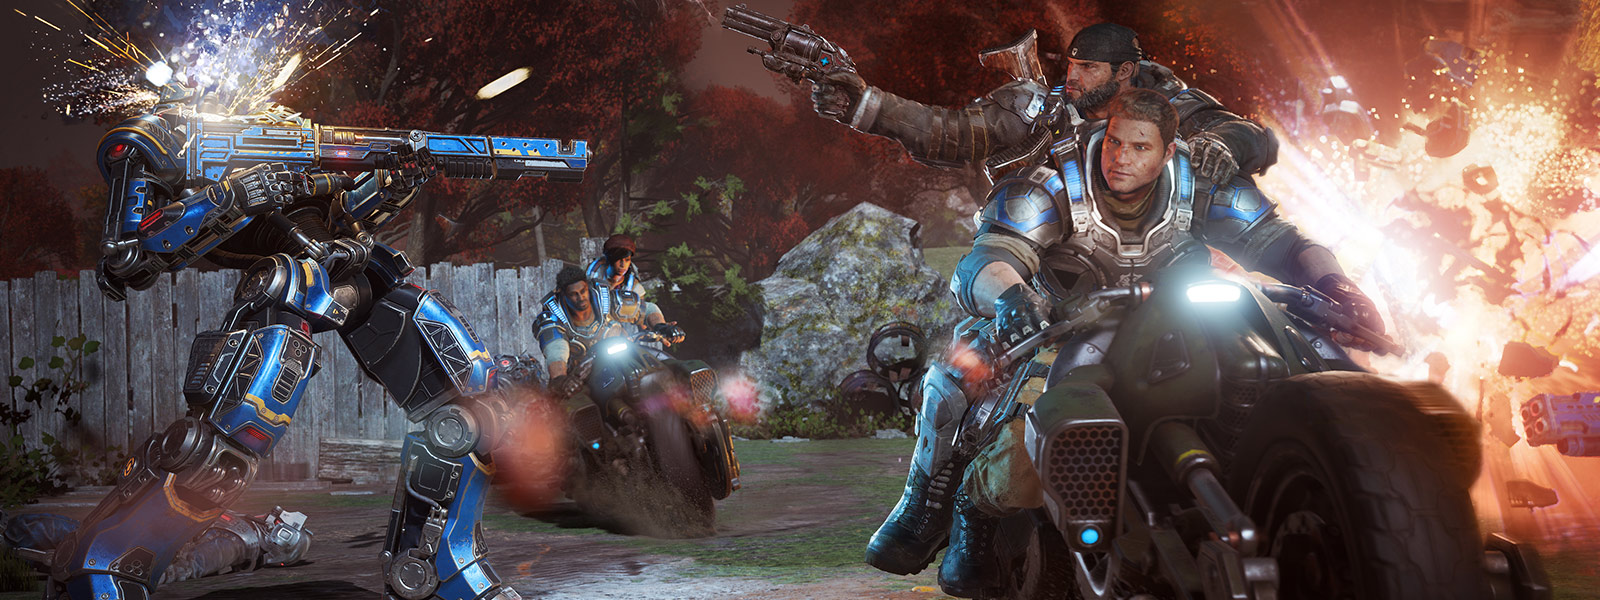 JD Fenix a jeho přátelé střílejí ze zbraní při jízdě na motorkách během bitvy ve hře Gears of War 4